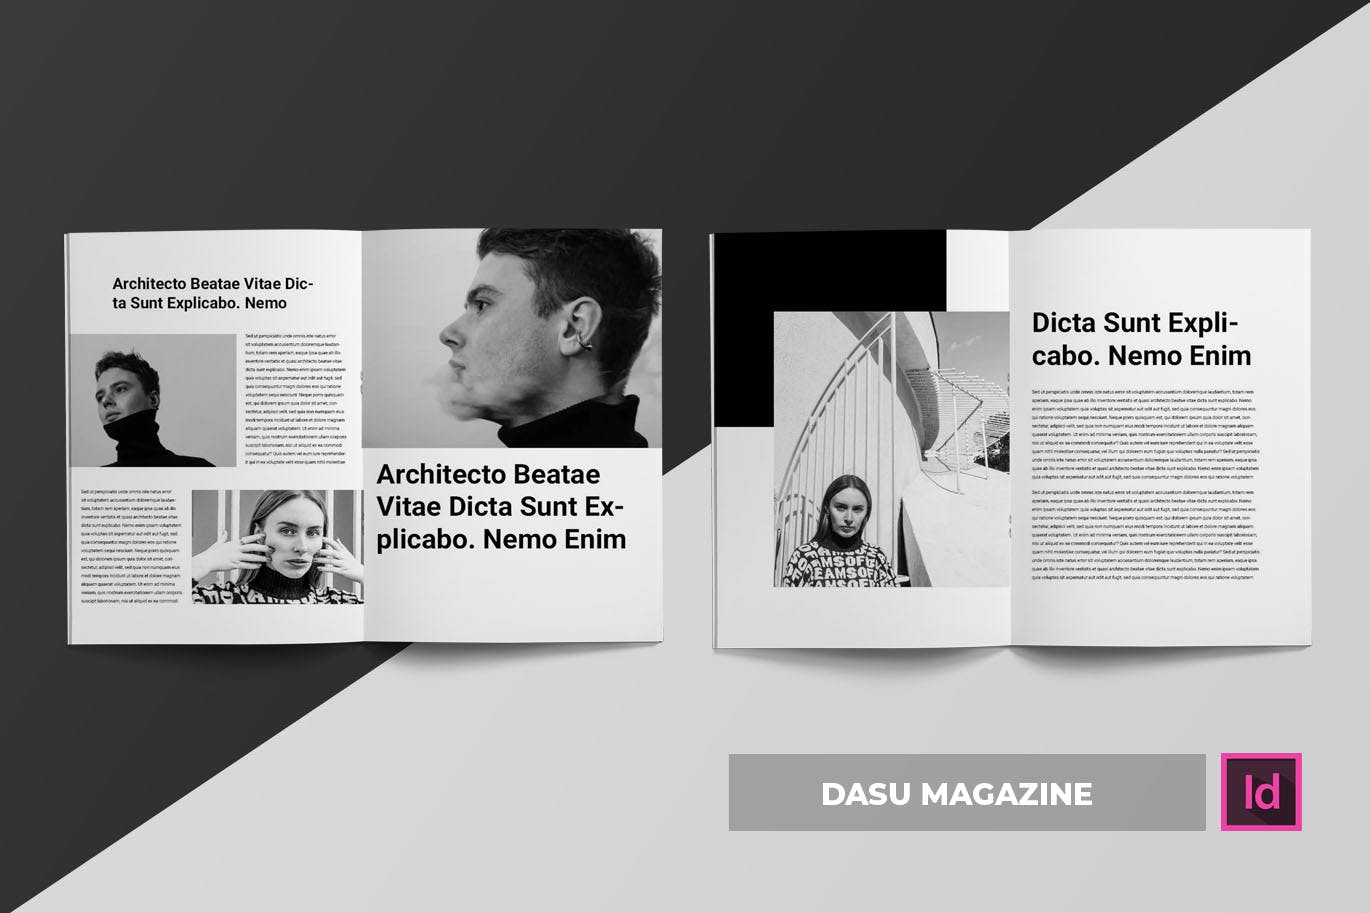 摄影艺术/时装设计主题大洋岛精选杂志排版设计模板 Dasu | Magazine Template插图2